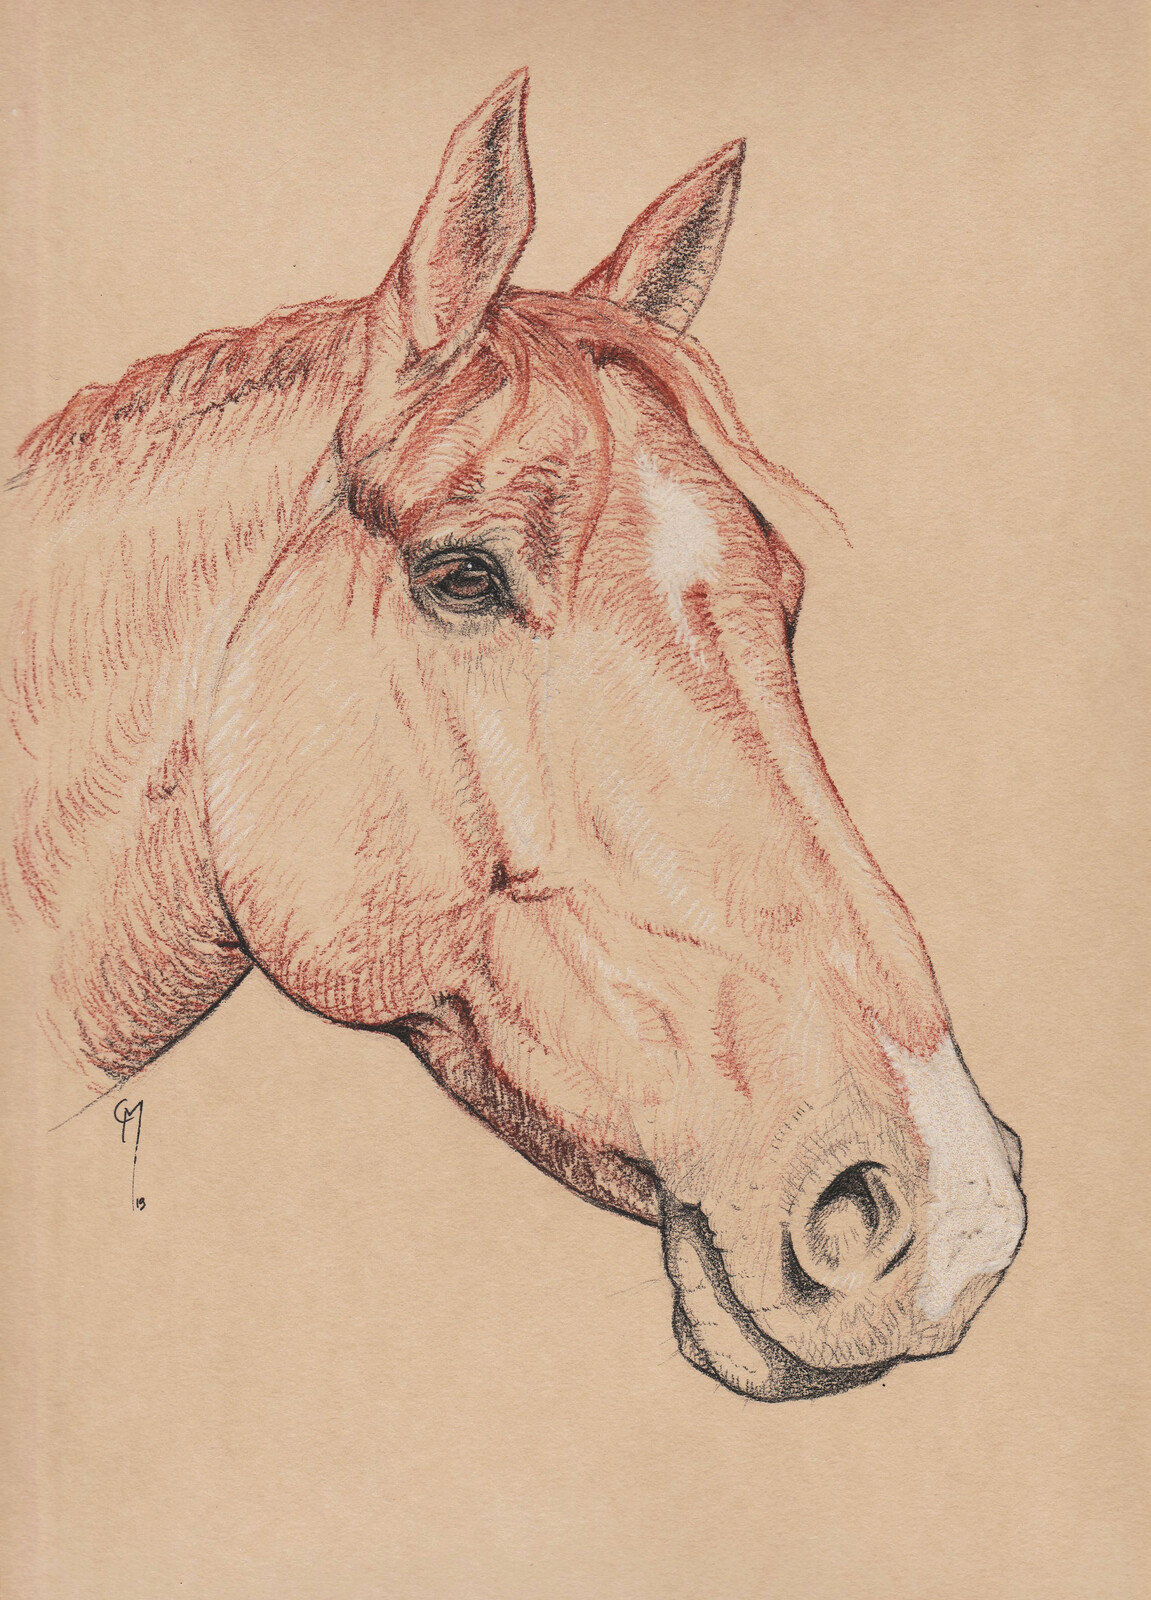 Horses' portraits